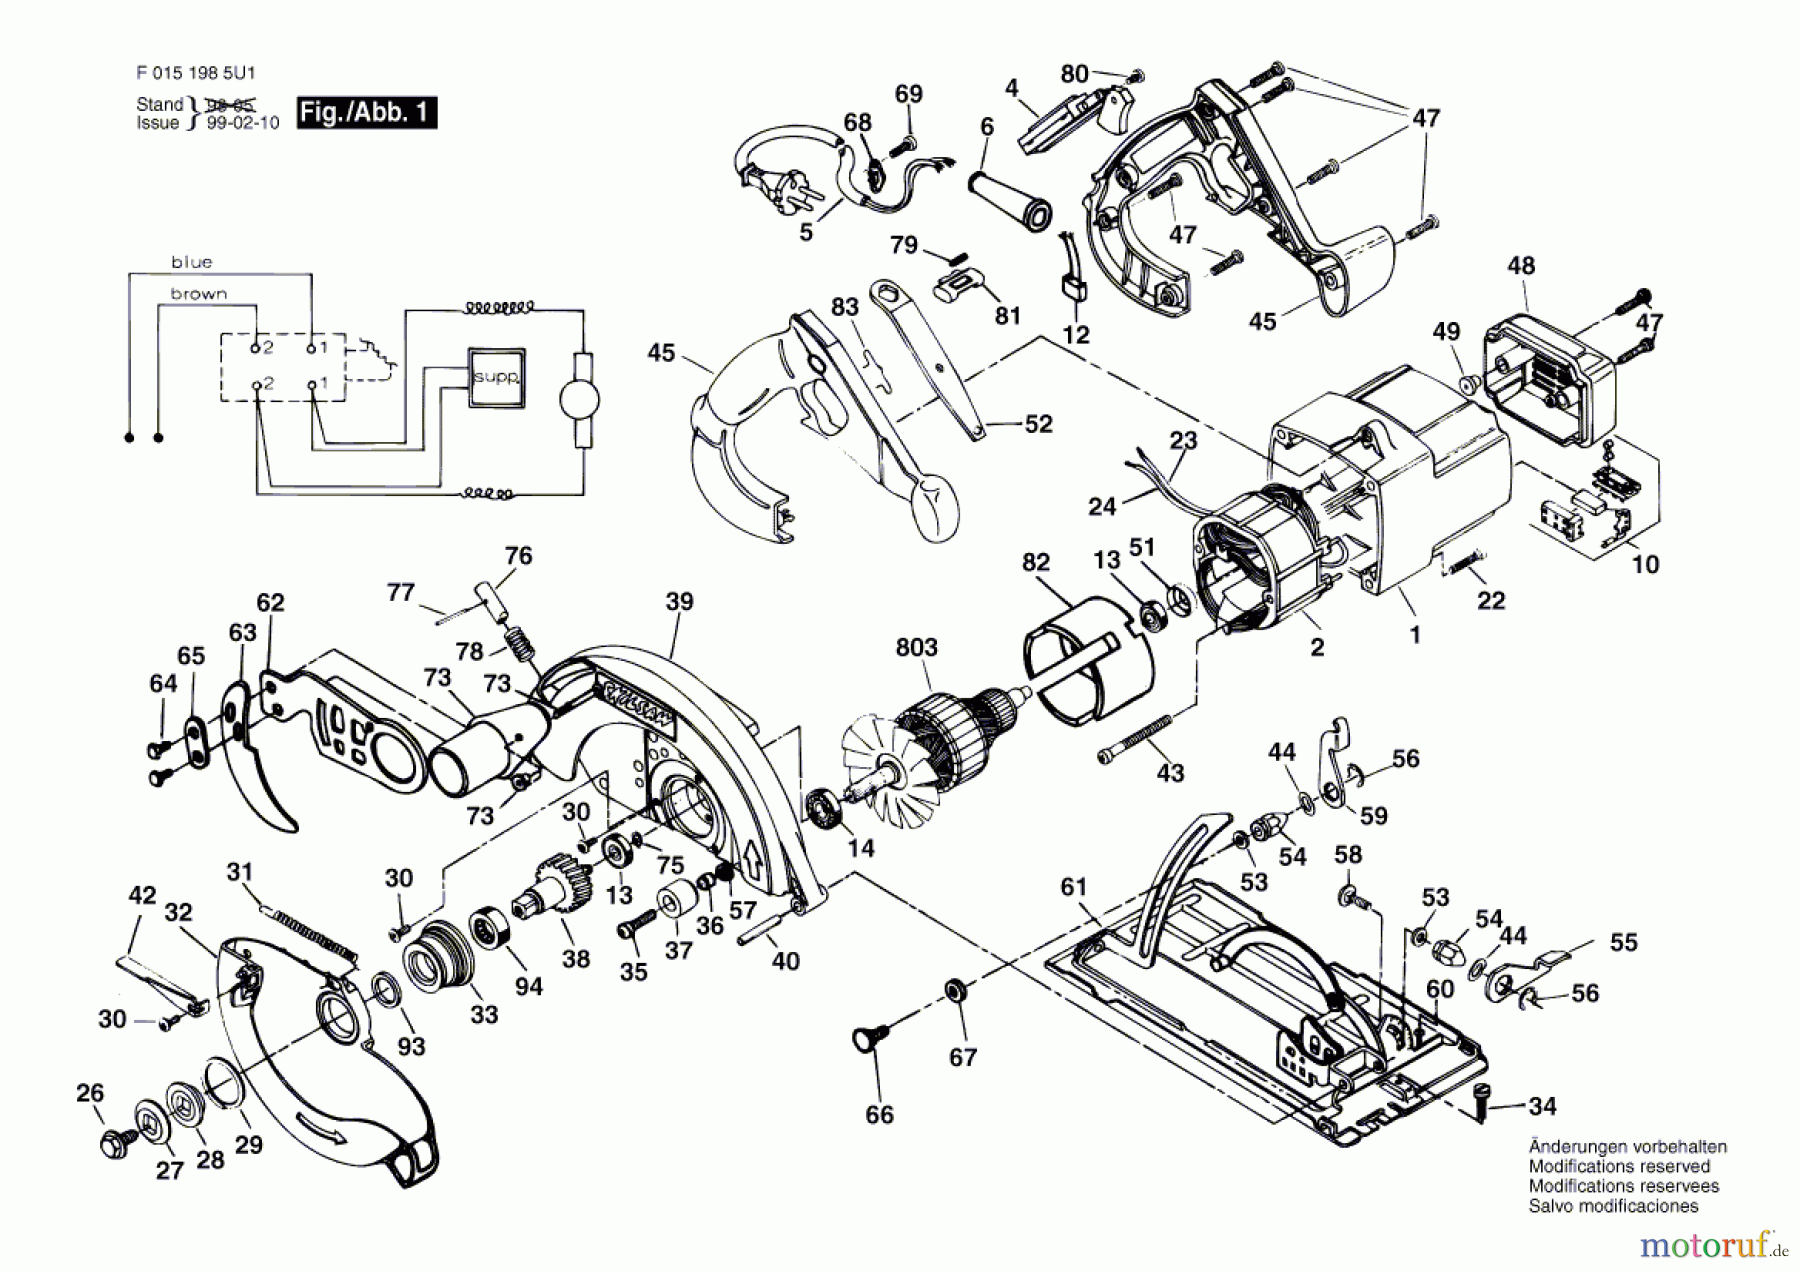  Bosch Werkzeug Gw-Handkreissäge 1985U1 Seite 1